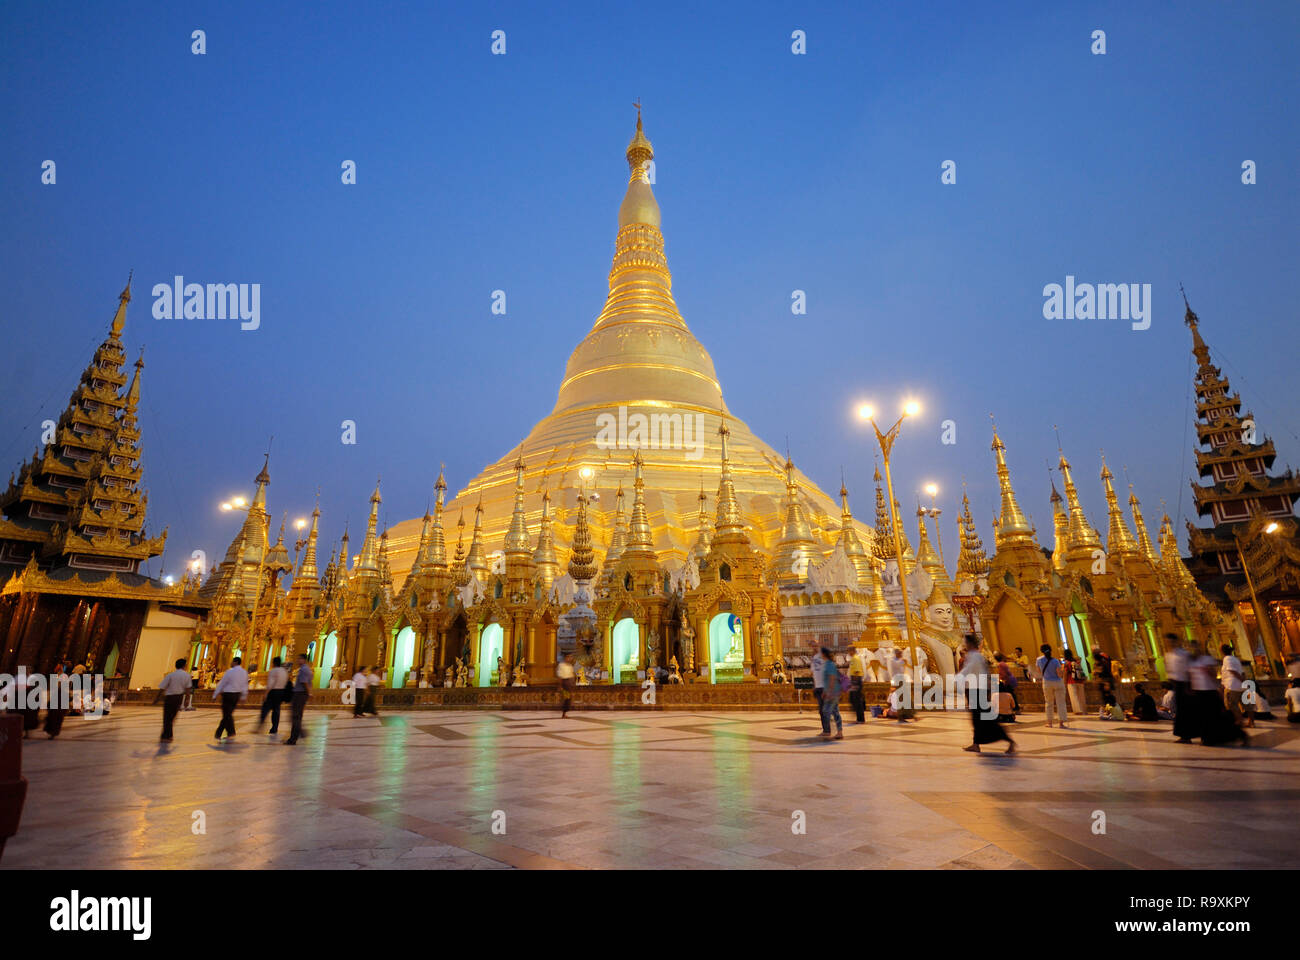 night shot of illuminated Shwedagon Pagoda Stock Photo